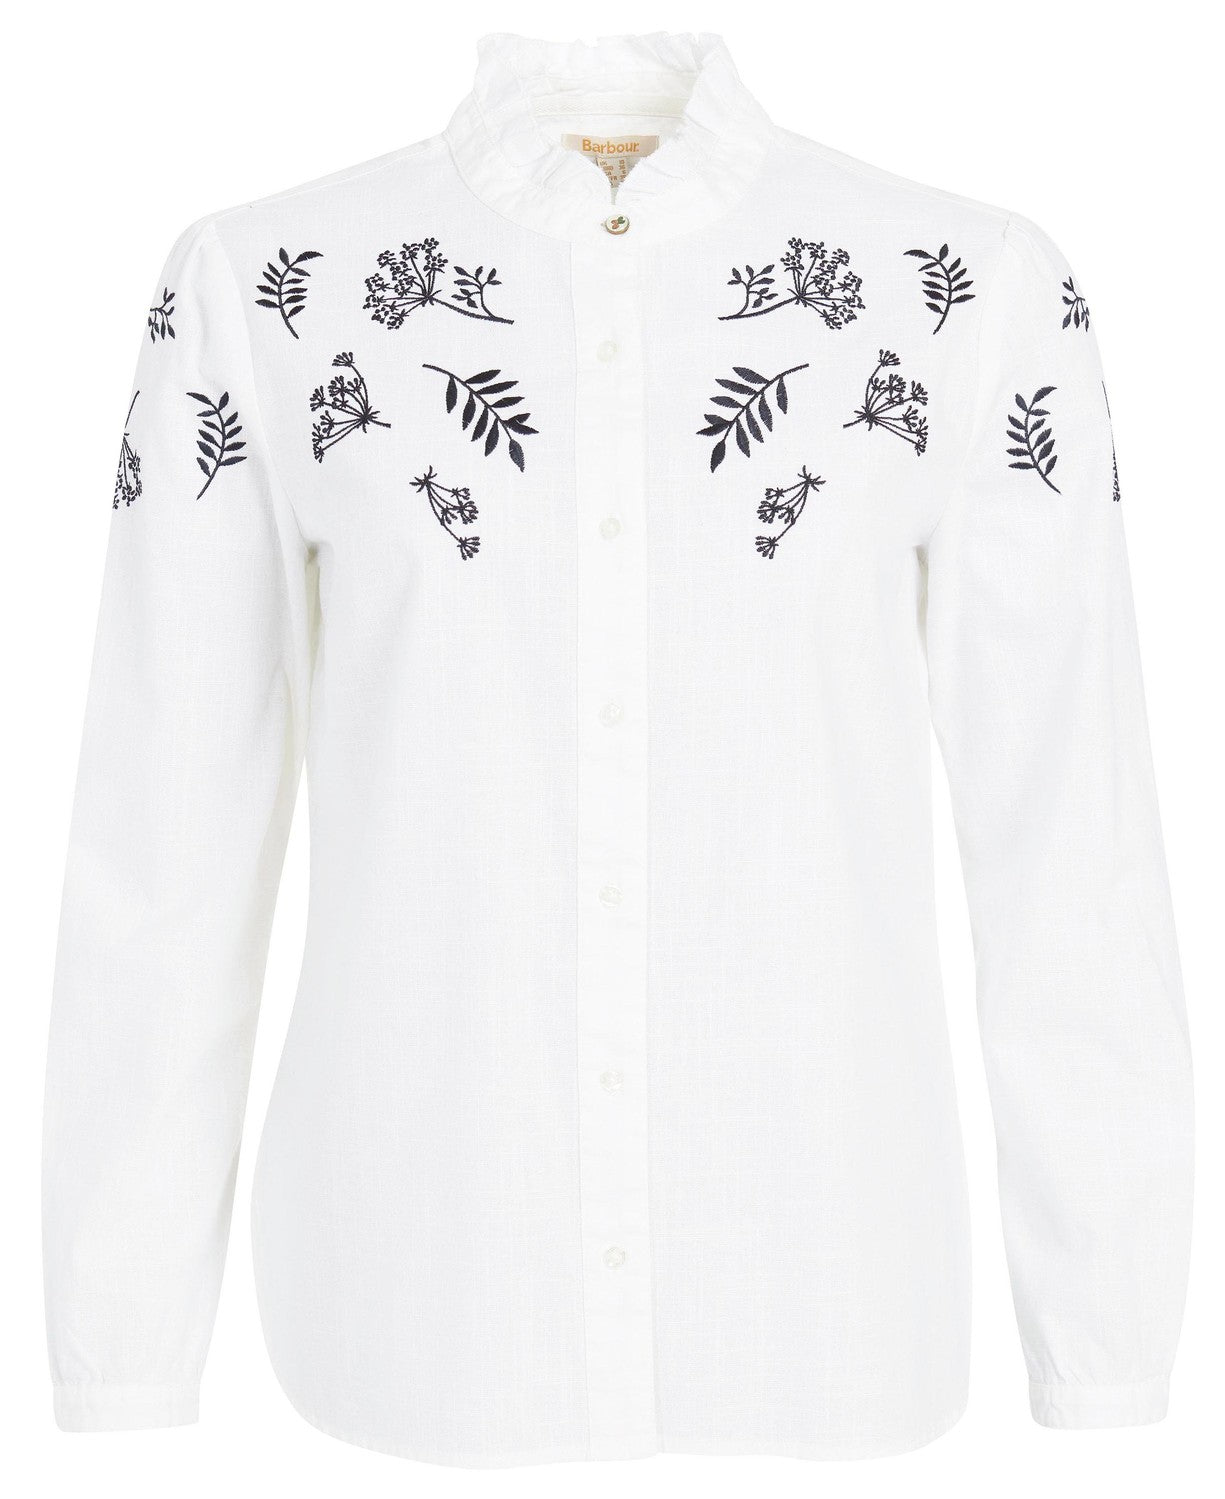 Barbour Whernside Shirt - White